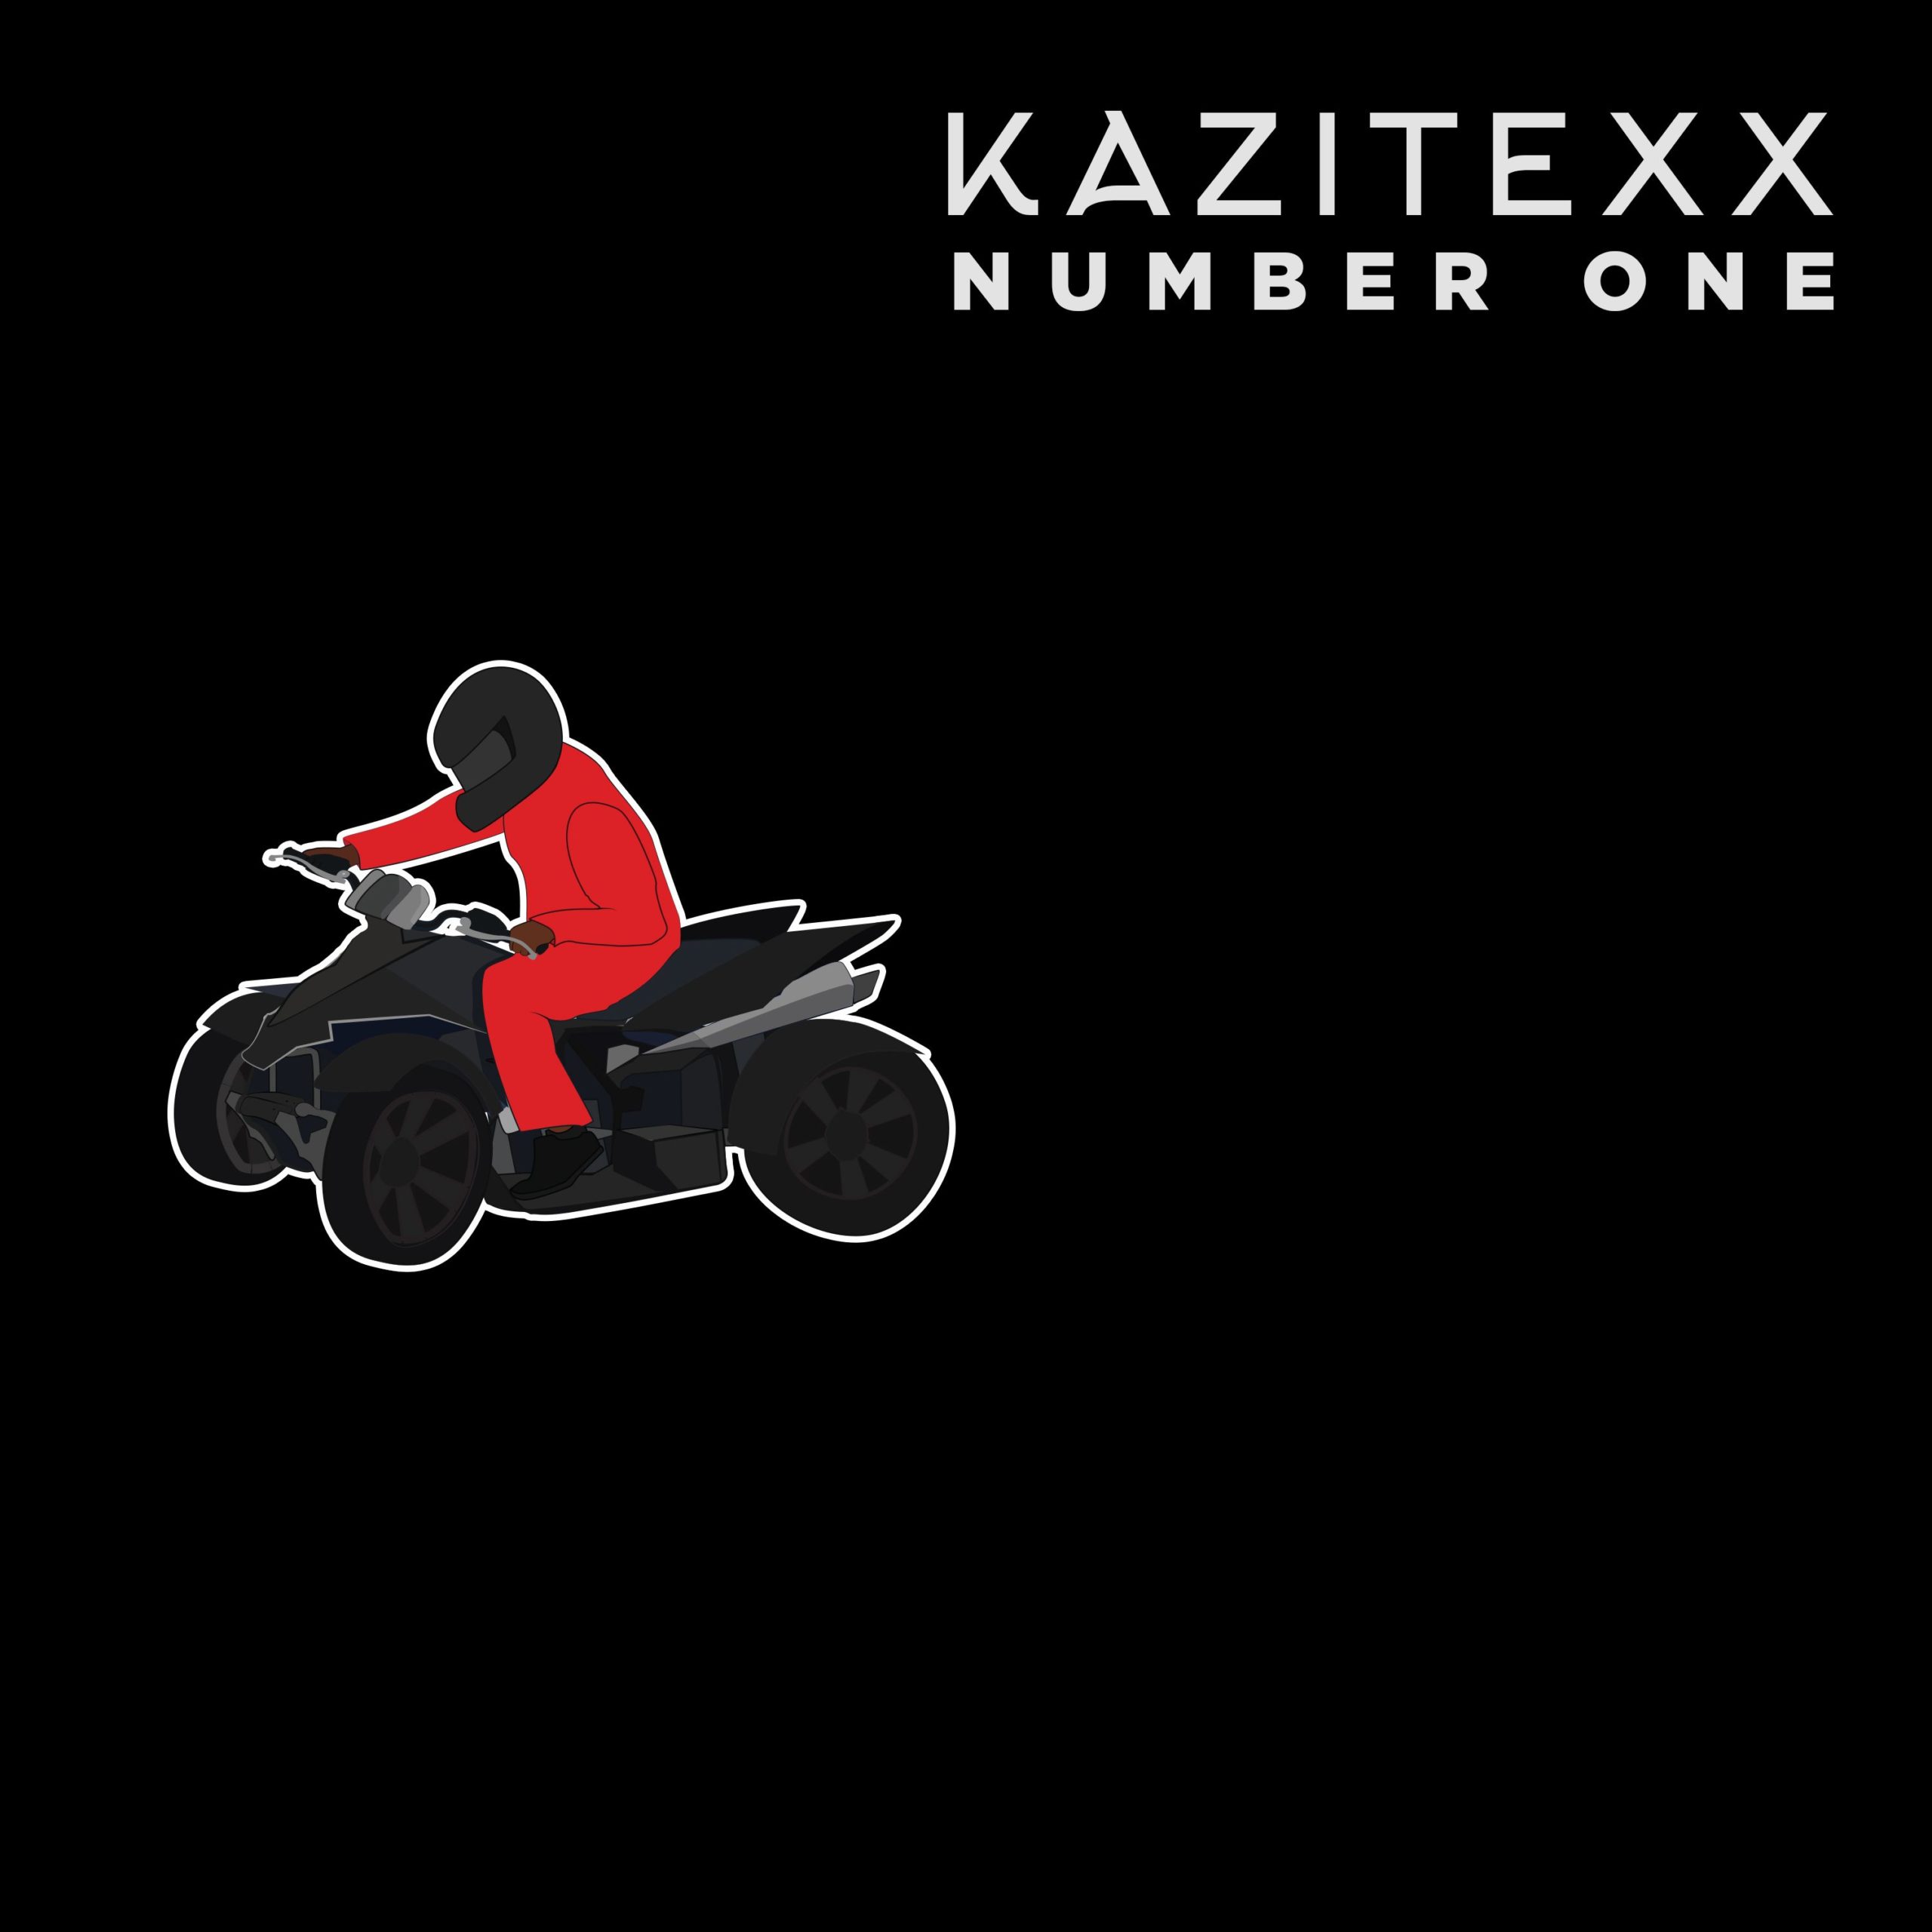 Kazitexx – “Number One”